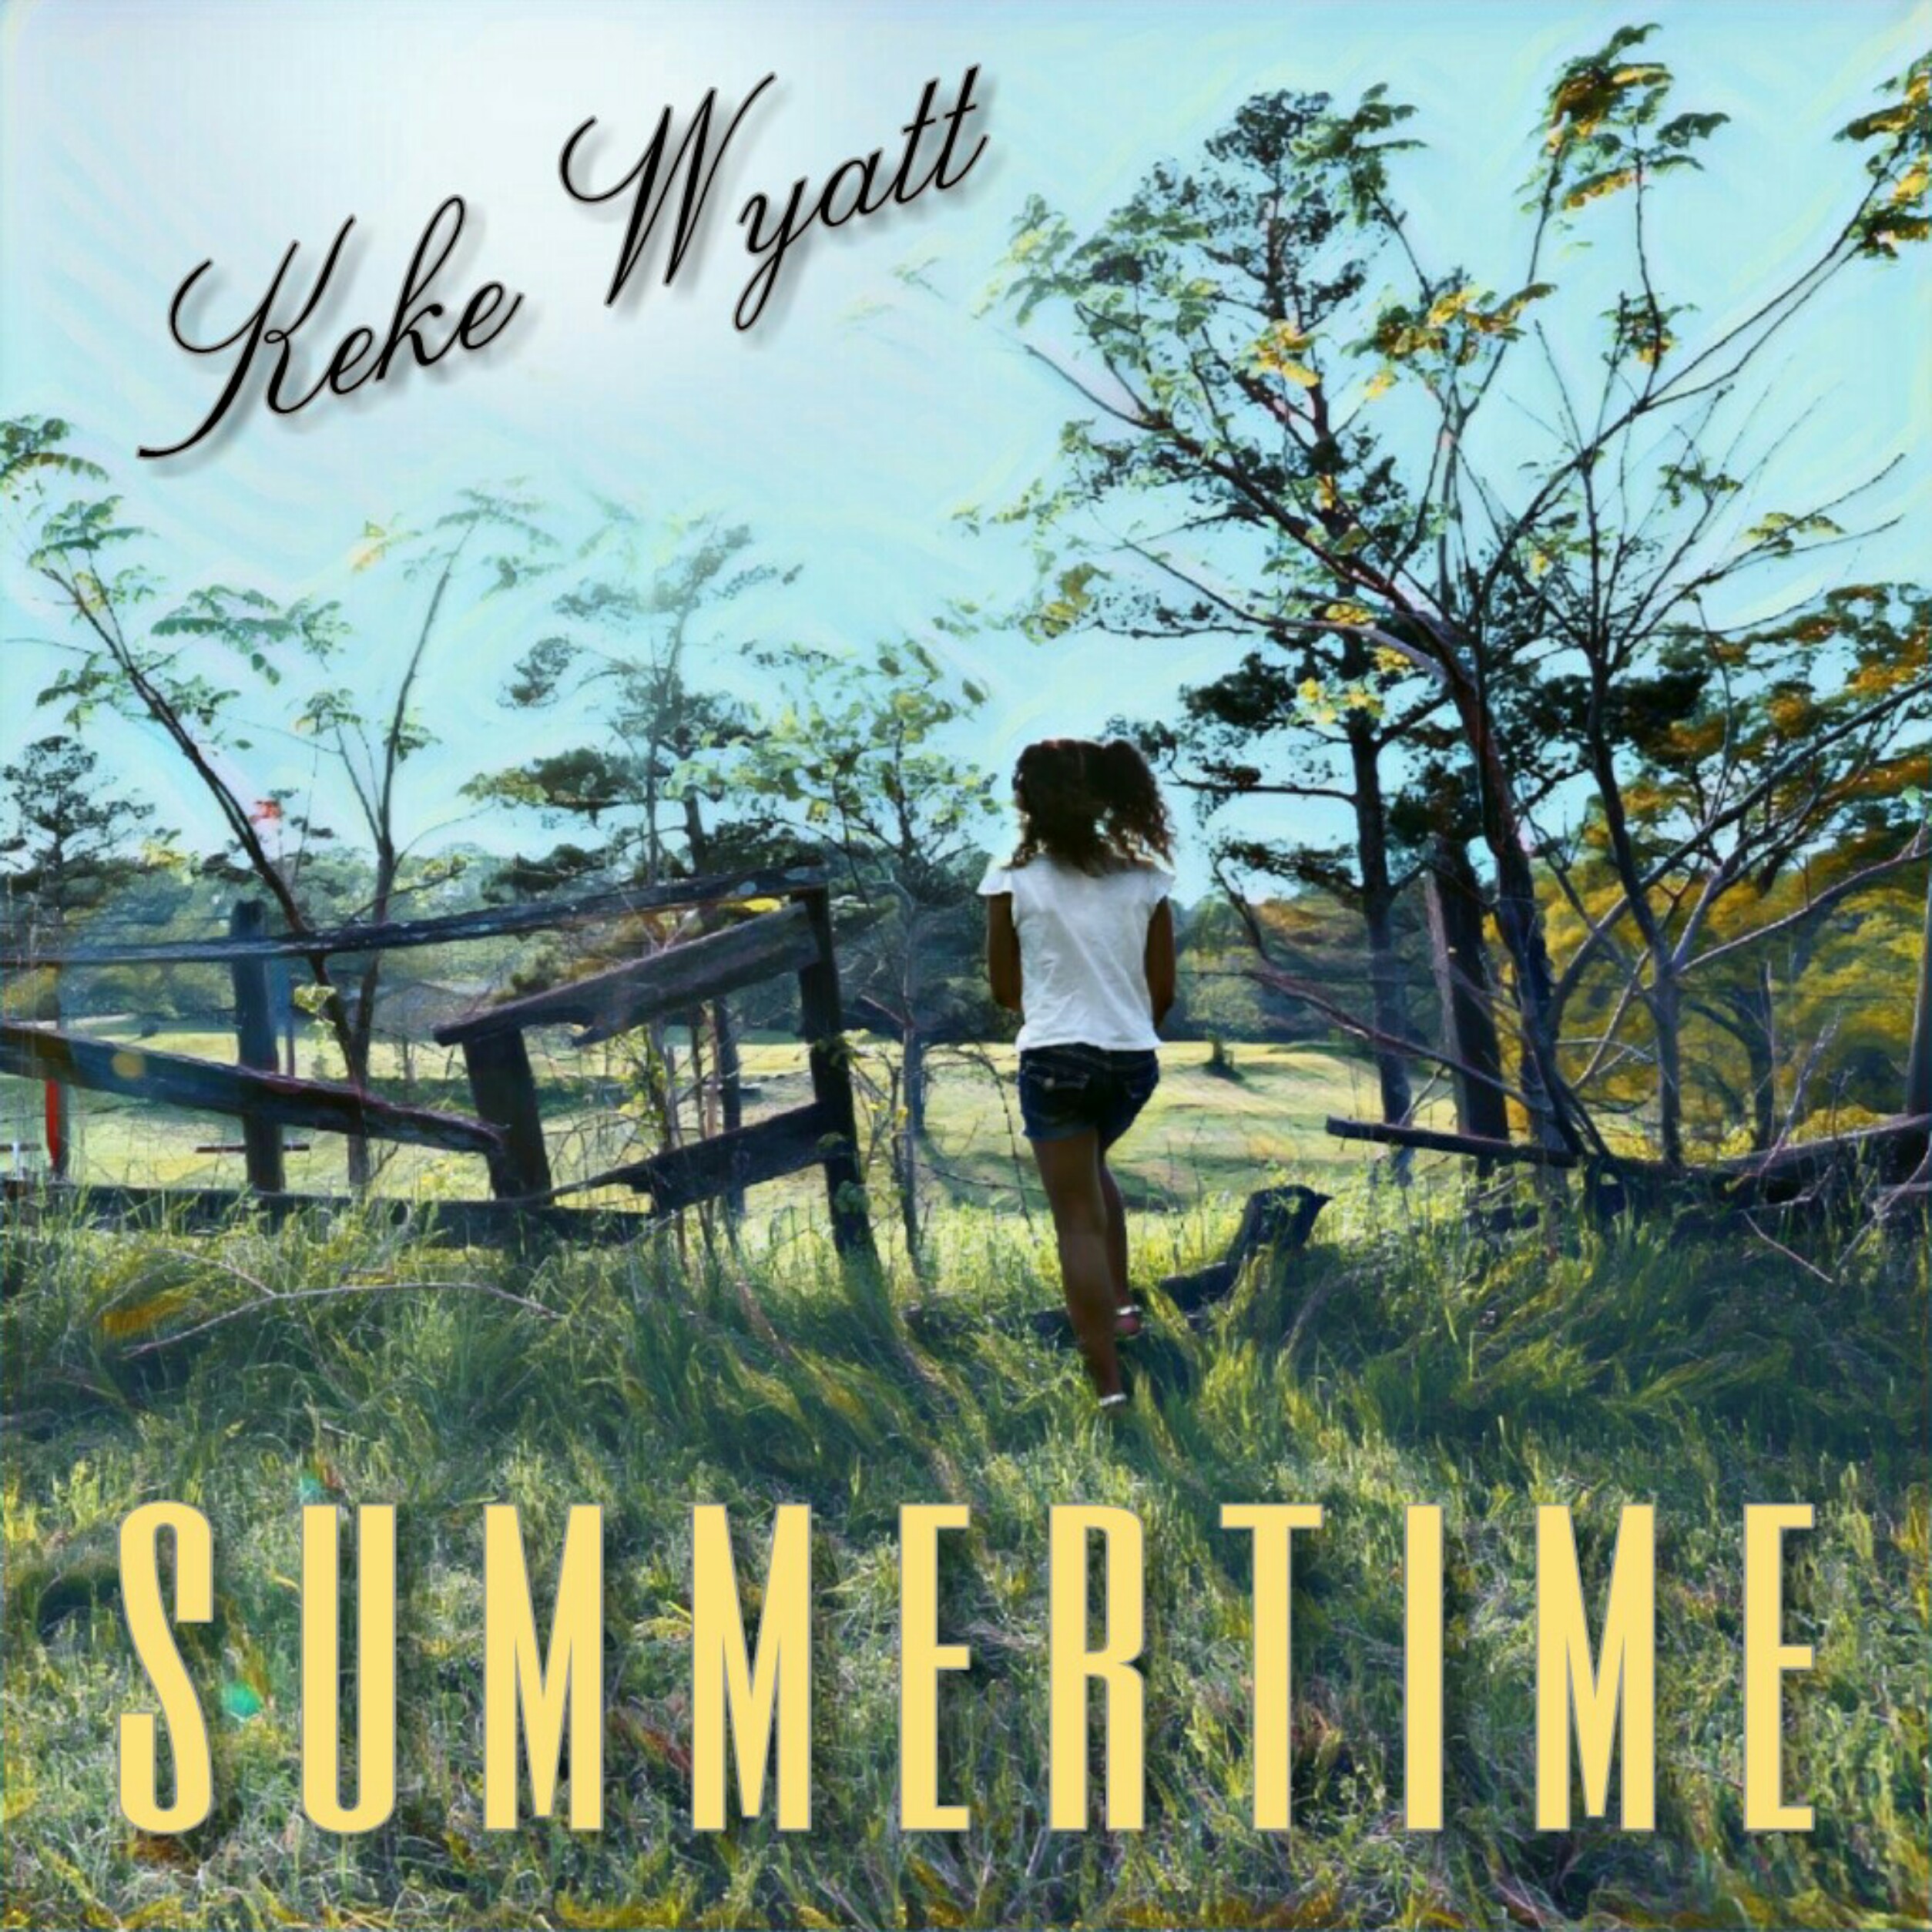 Keke Wyatt Summertime